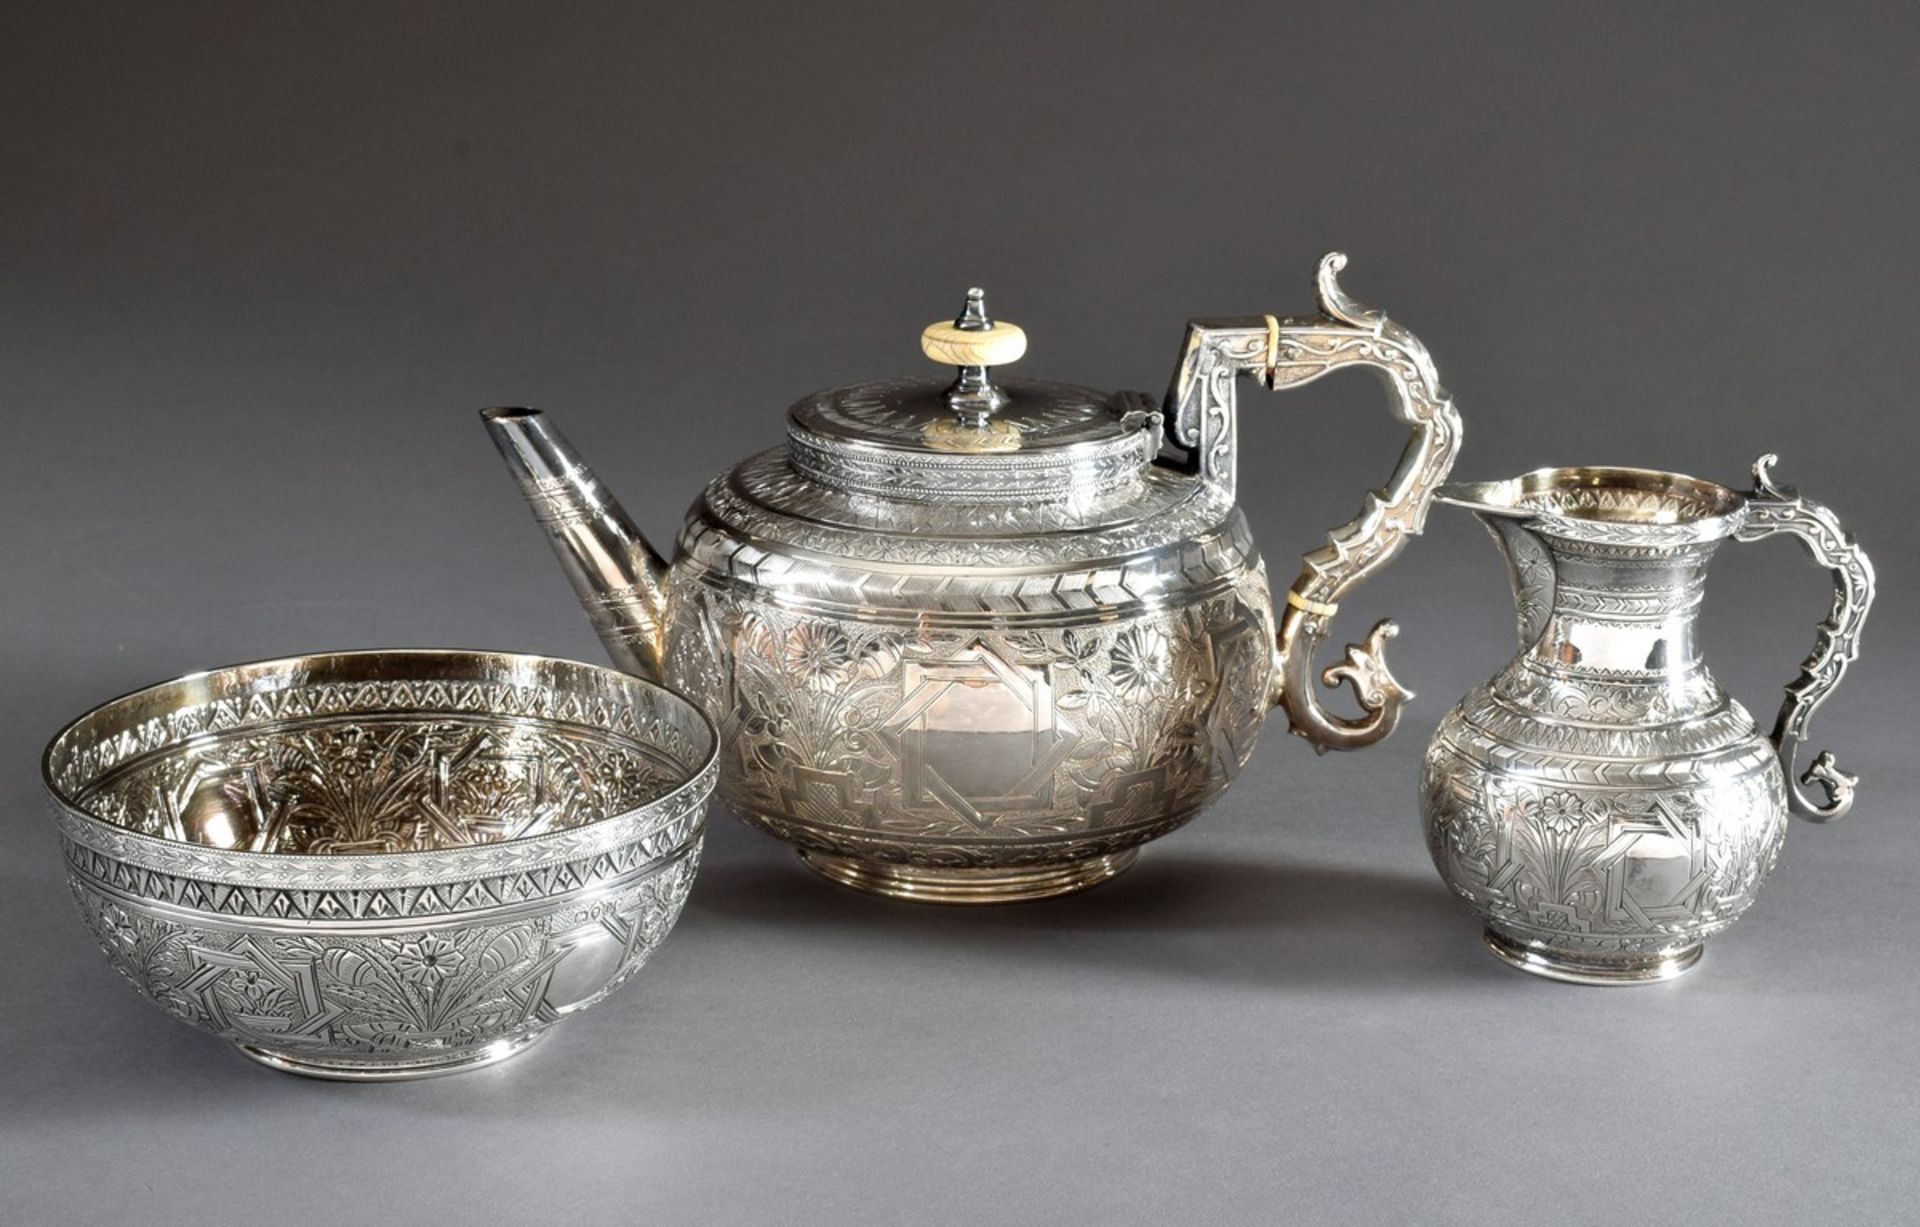 3 Teile viktorianisches Teeset mit reichem Gravurdekor in orientalischem Stil, W & C/Sissons, London